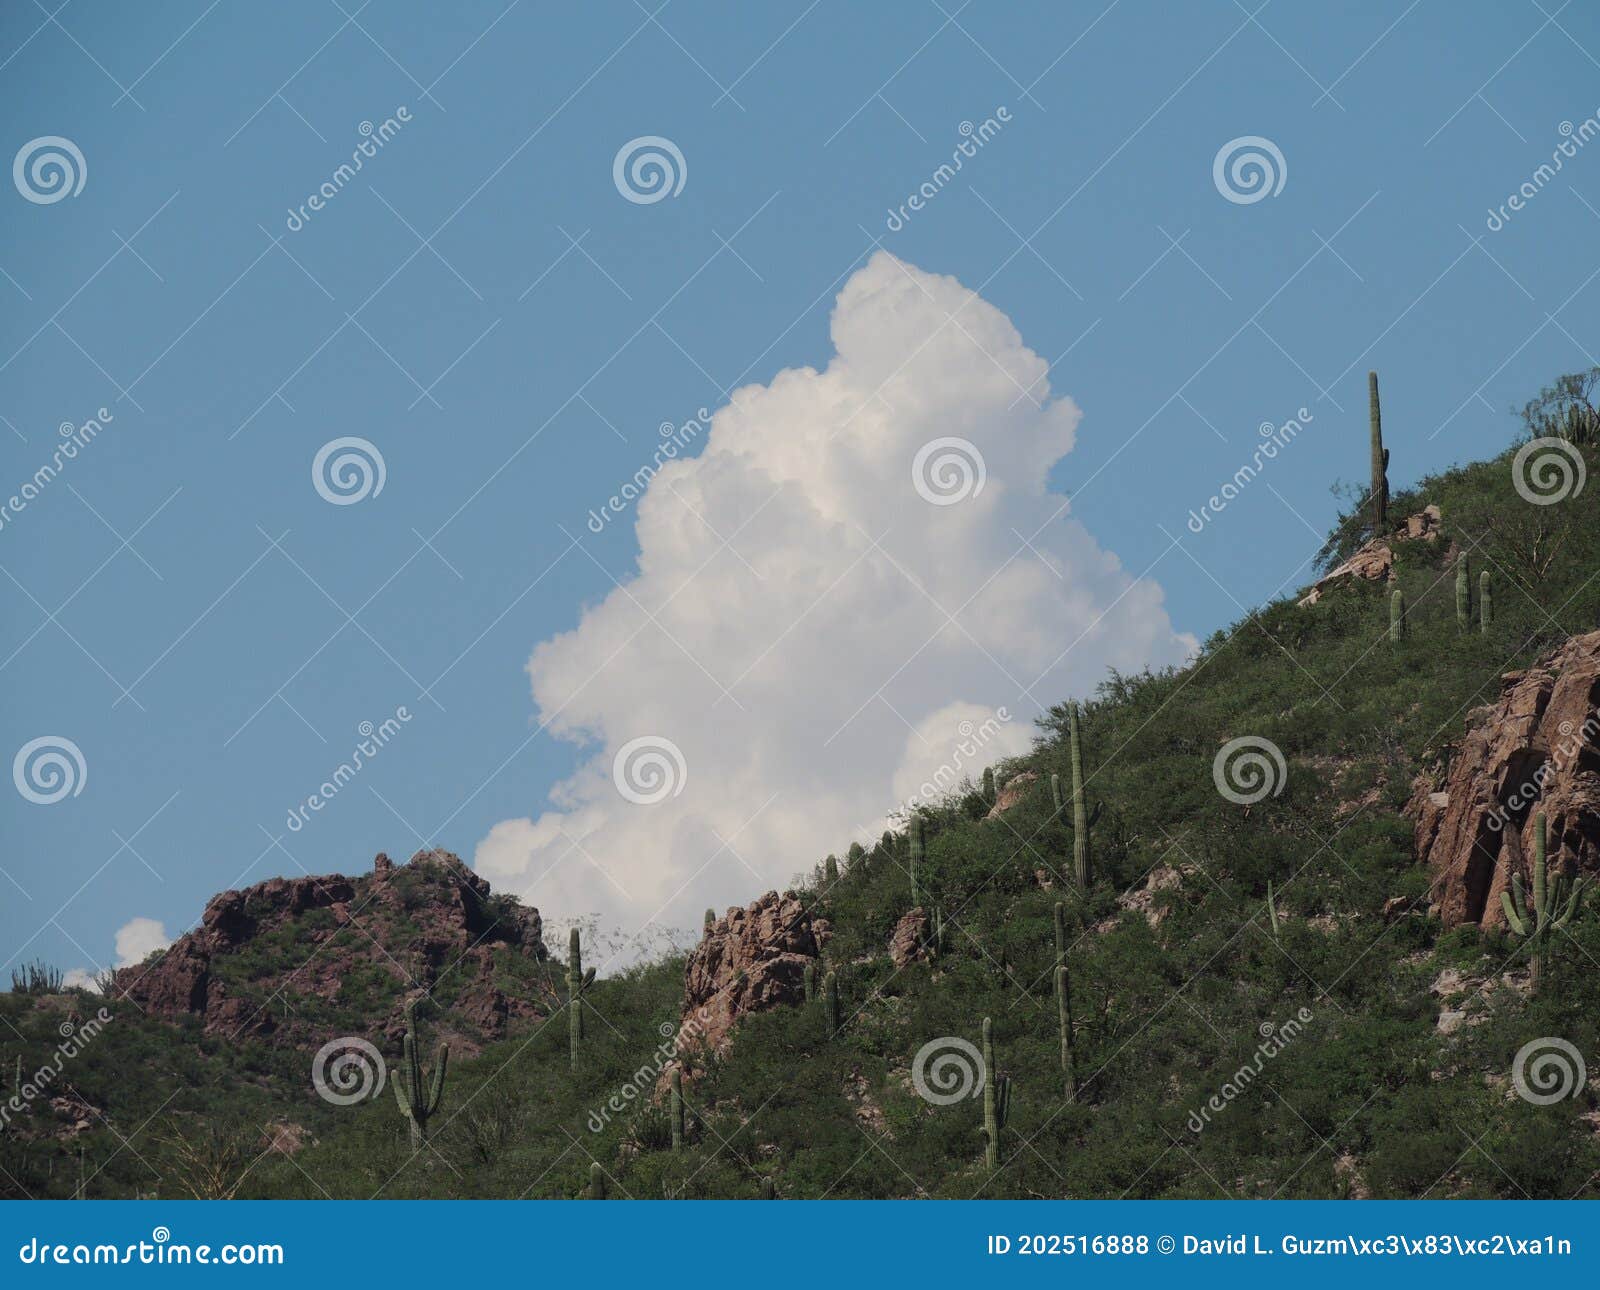 unique cloud above saguaro hill